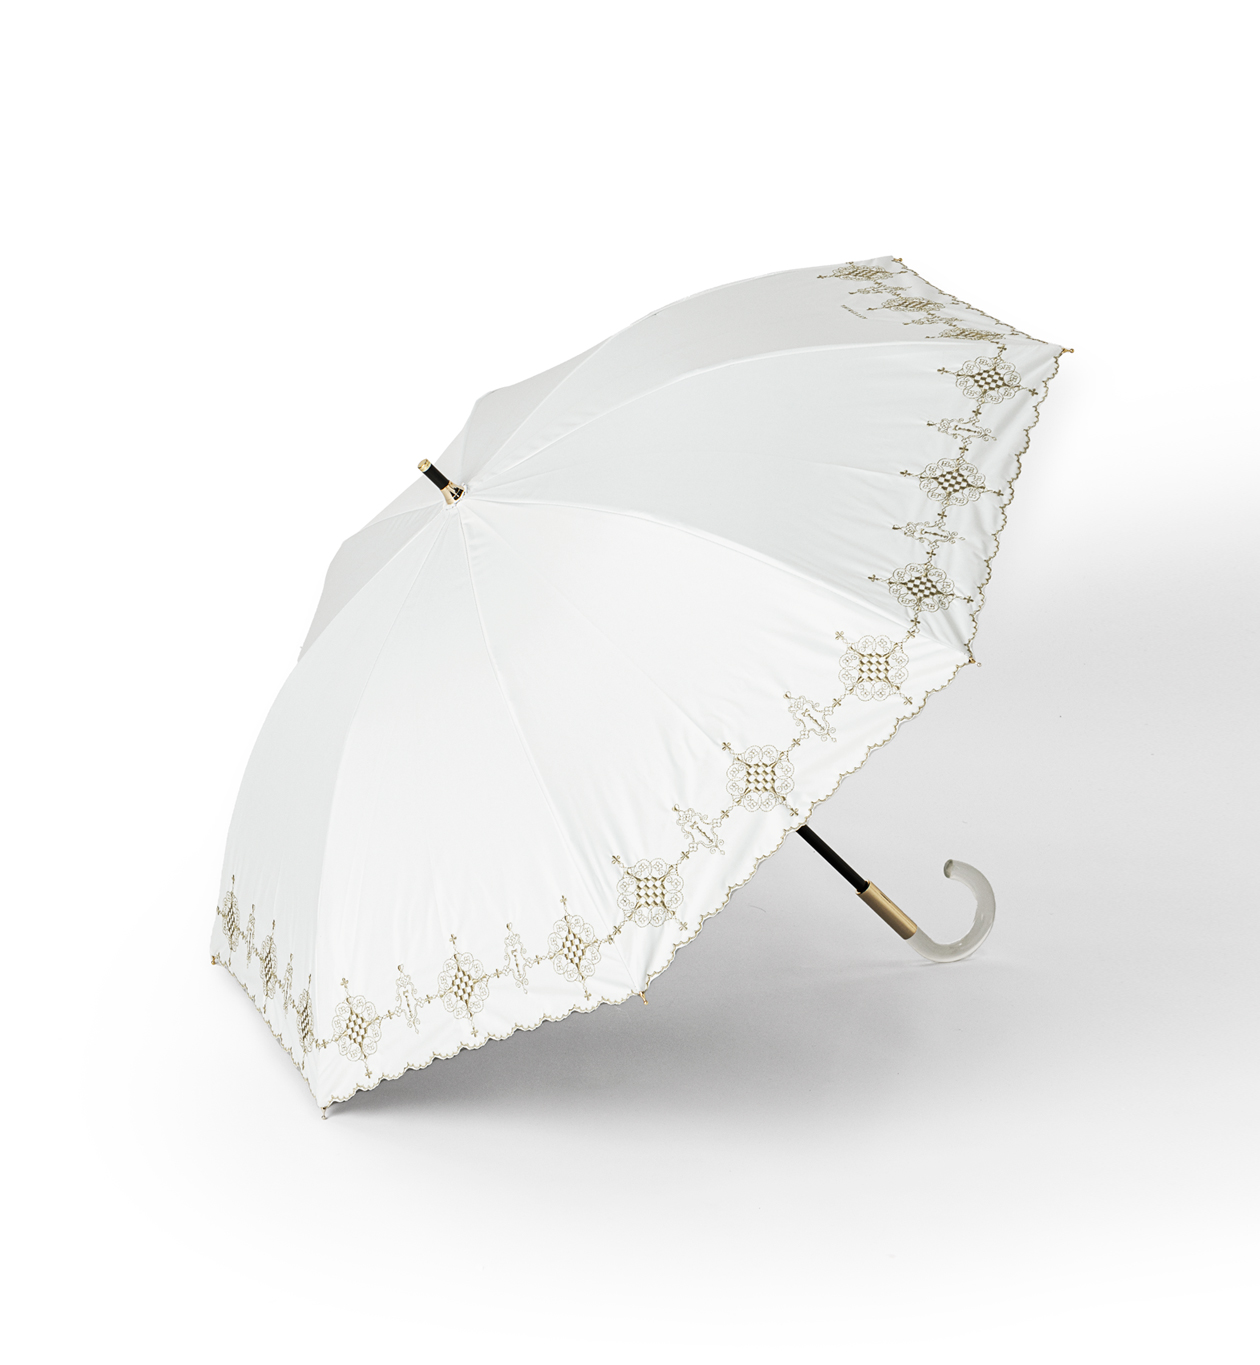 ダマスコ柄晴雨兼用スライドショート傘/ホワイト